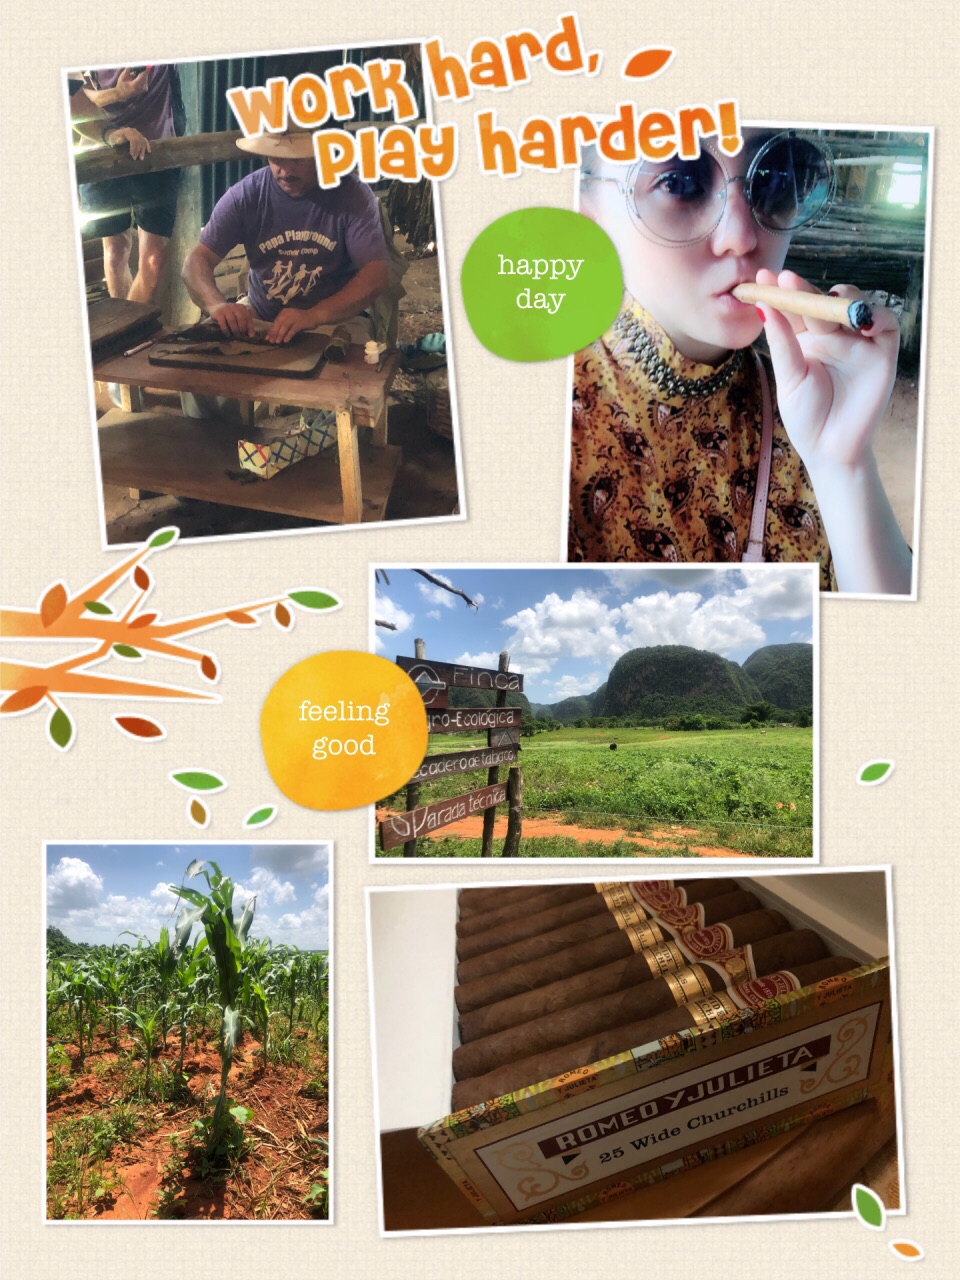 #激情一夏#水菱环球之旅の一支古巴🇨🇺雪茄